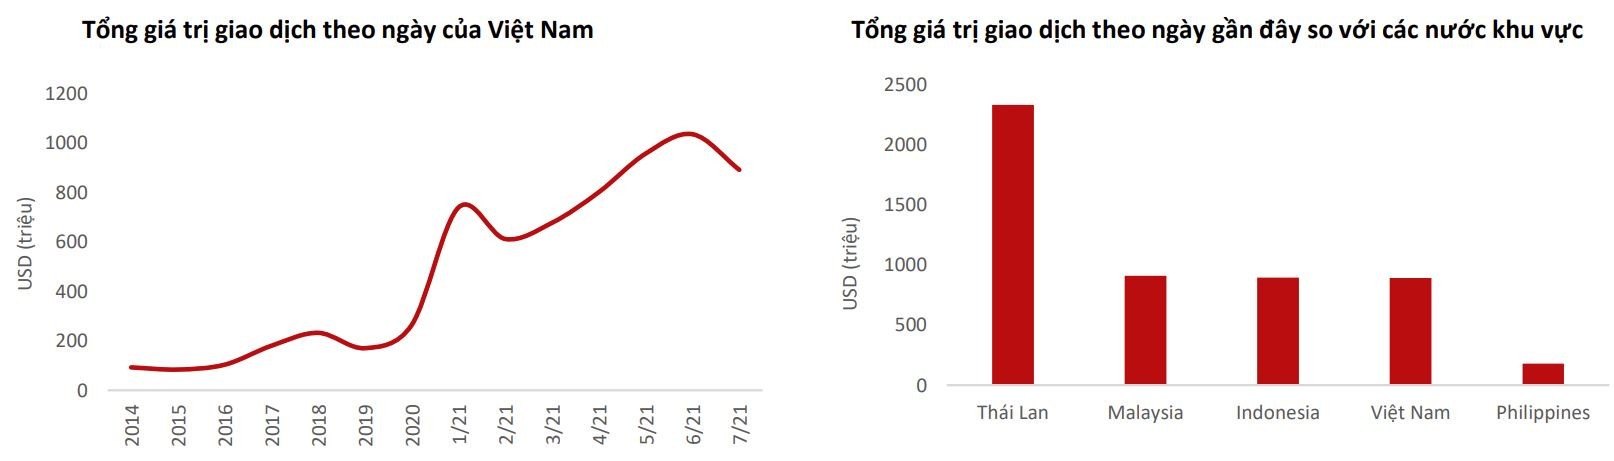 Việt Nam có sức hấp dẫn nổi trội đối với dòng tiền khối ngoại